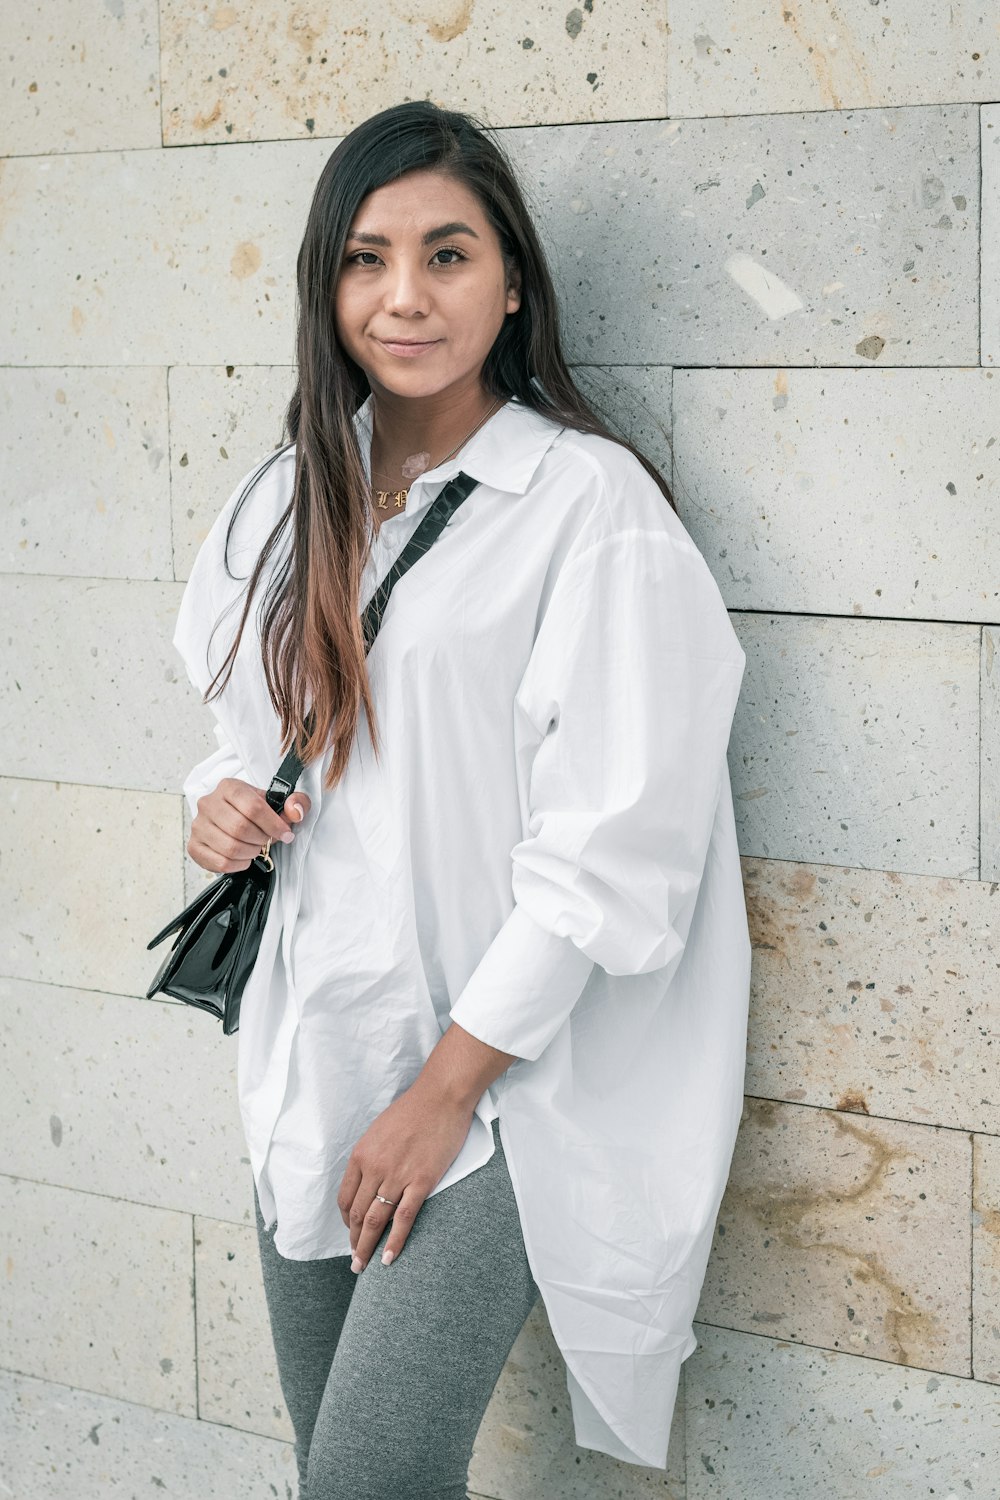 Foto Mujer con camisa blanca manga larga – Gris gratis en Unsplash